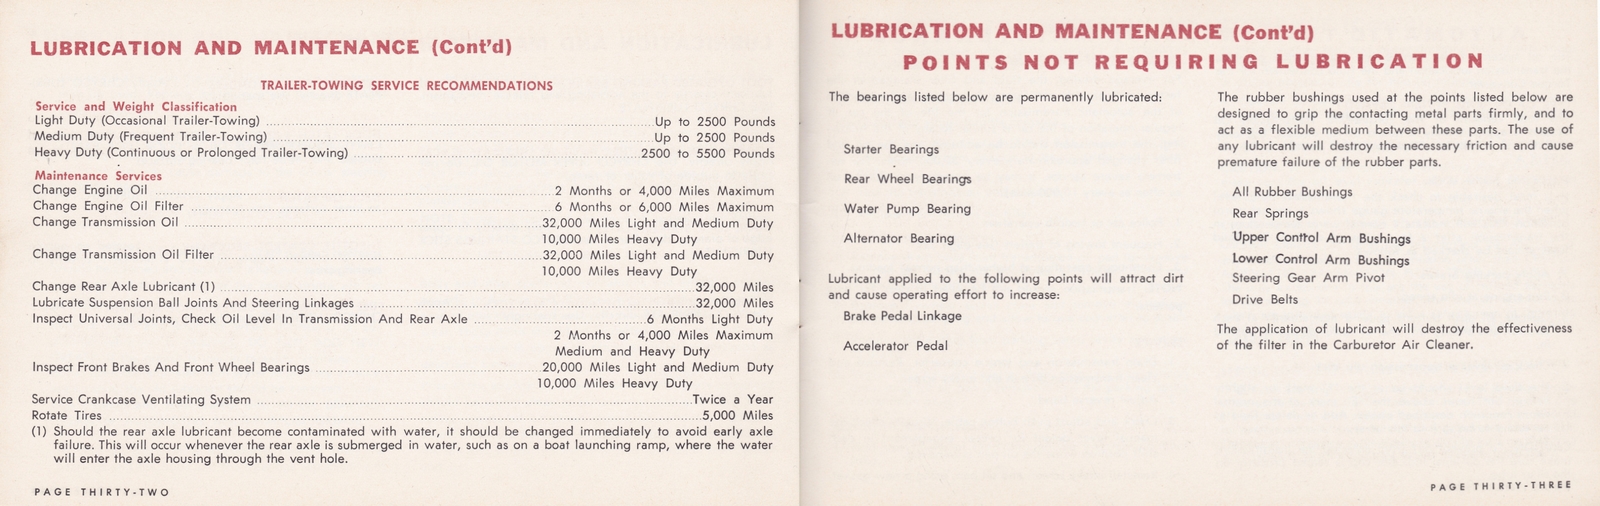 n_1964 Chrysler Owner's Manual (Cdn)-32-33.jpg